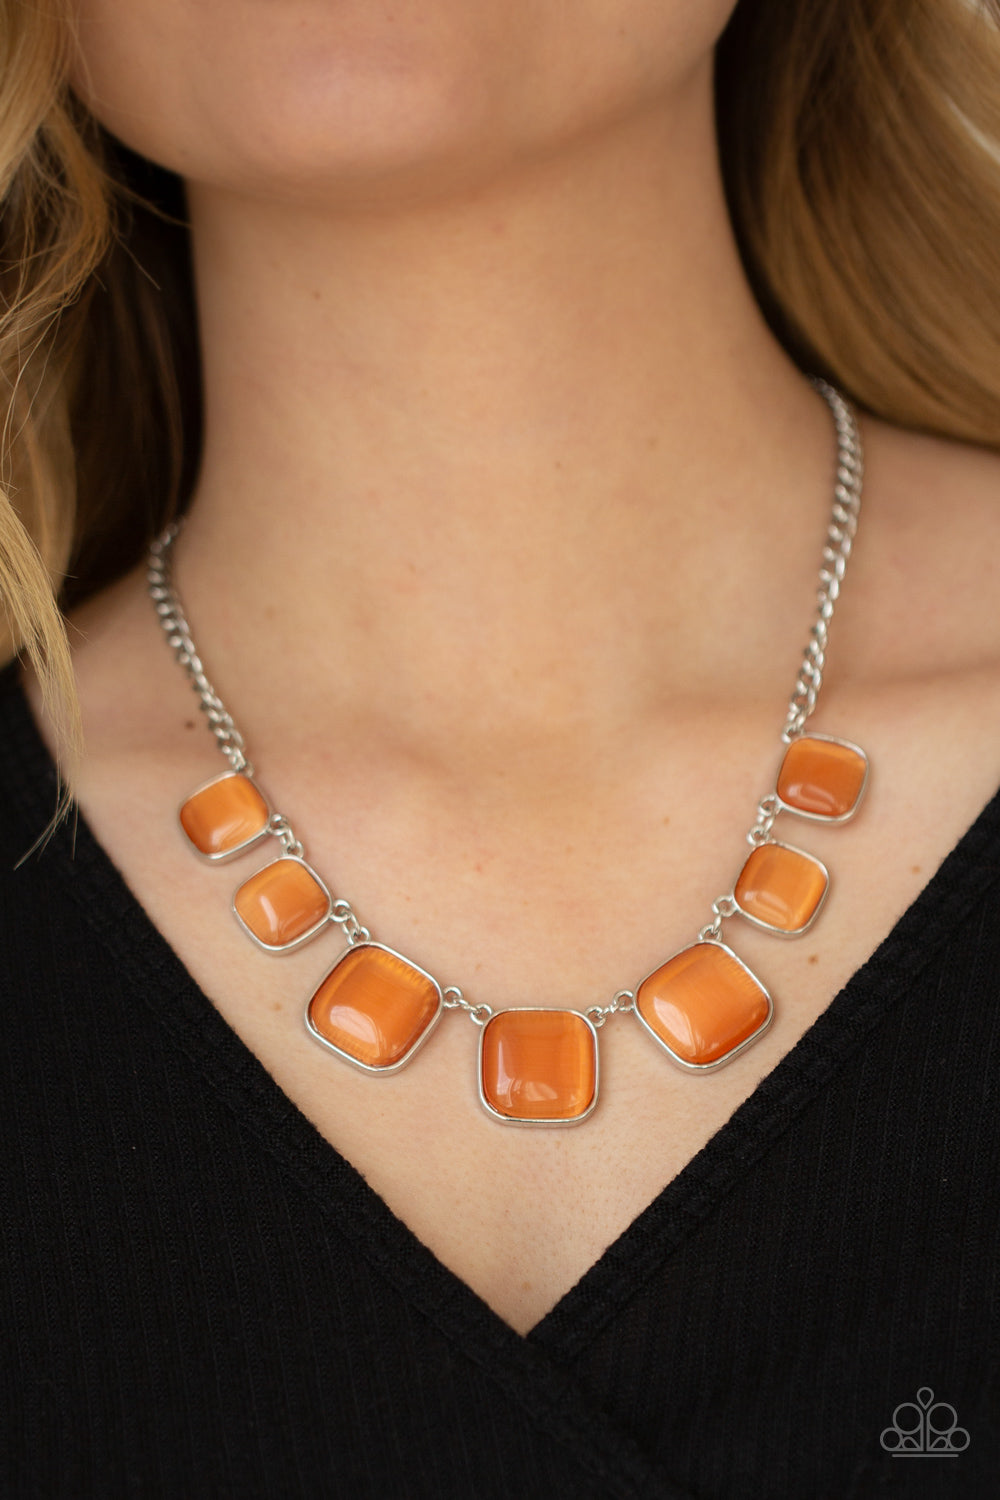 22 Orange Premium Glow Necklaces (50/tube or 600/case)